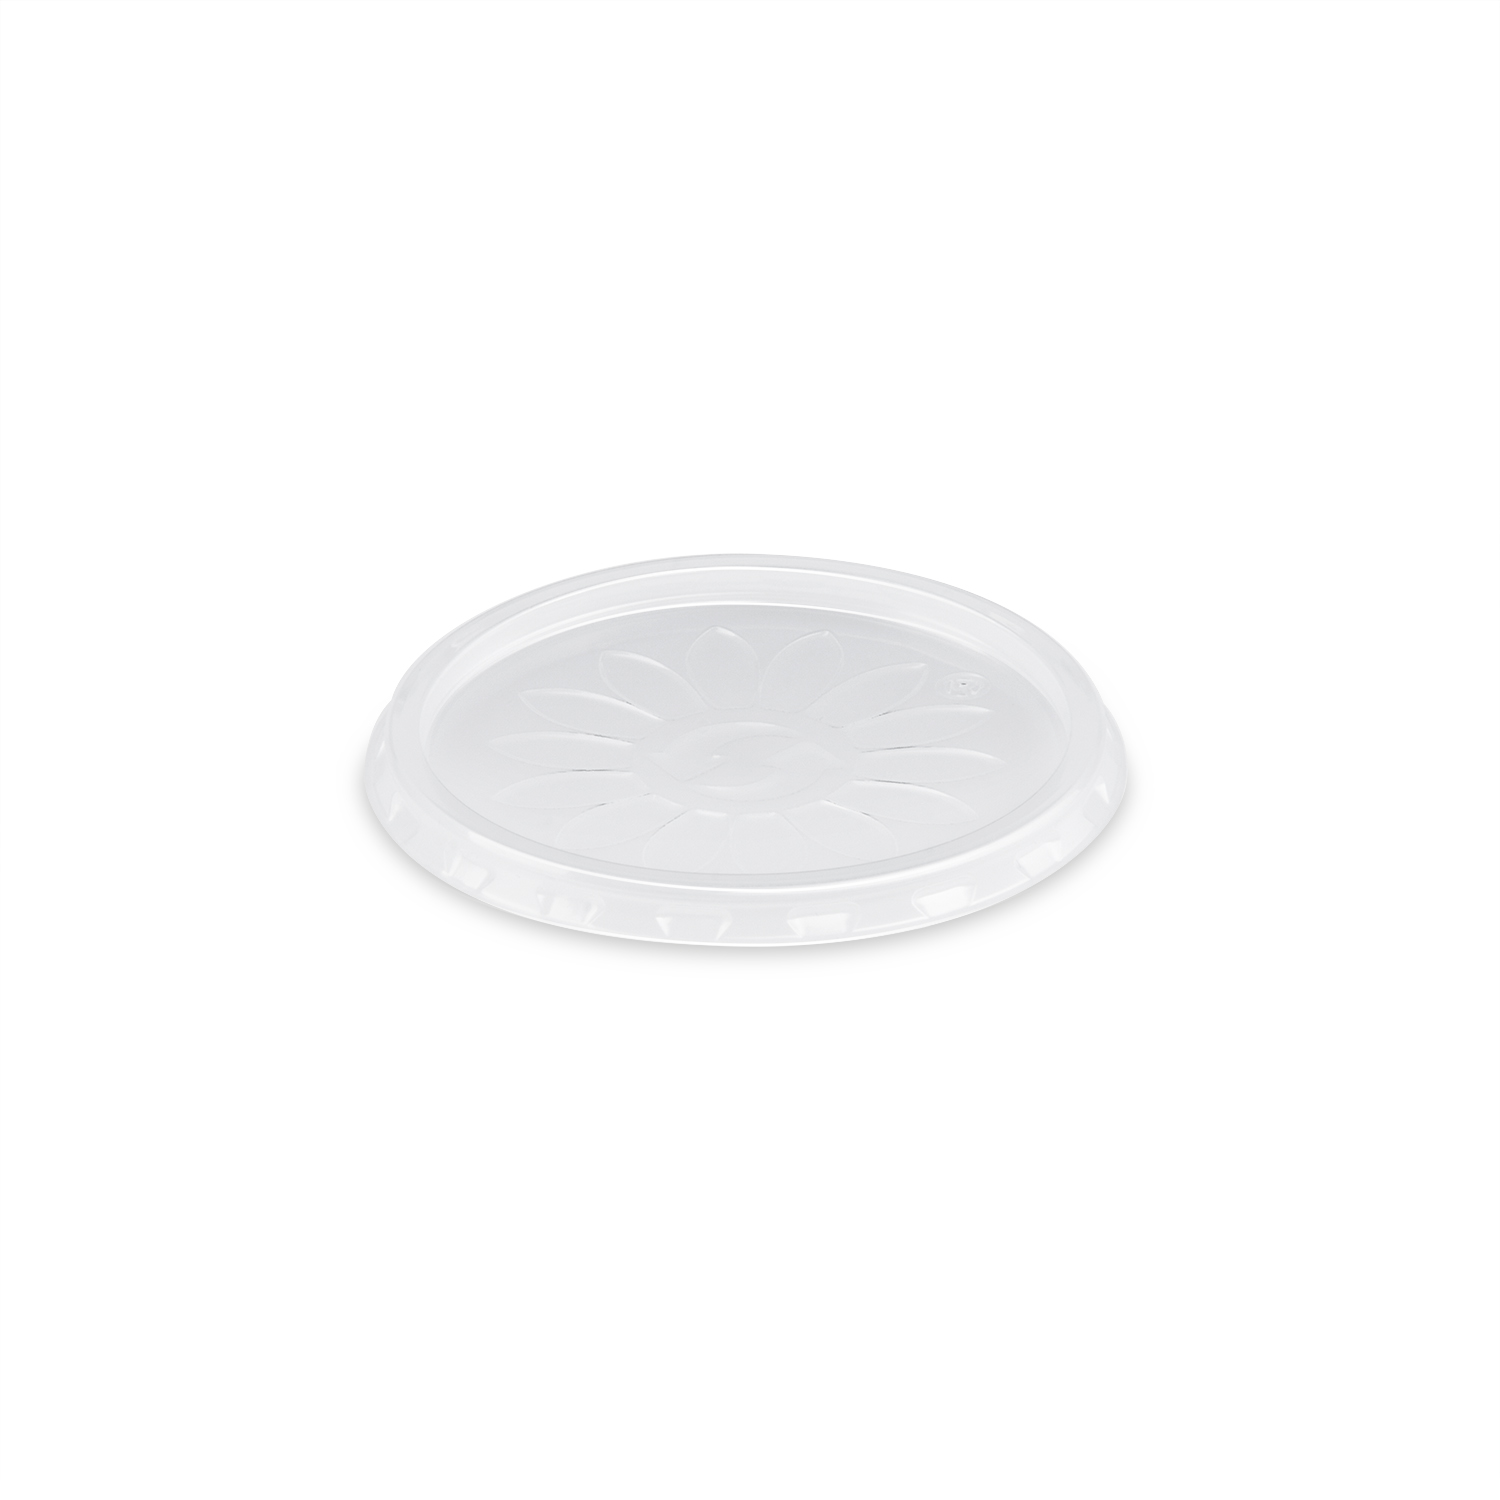 Deckel transparent Ø 70 mm für Dressingbecher, Soßenbecher 80 ml